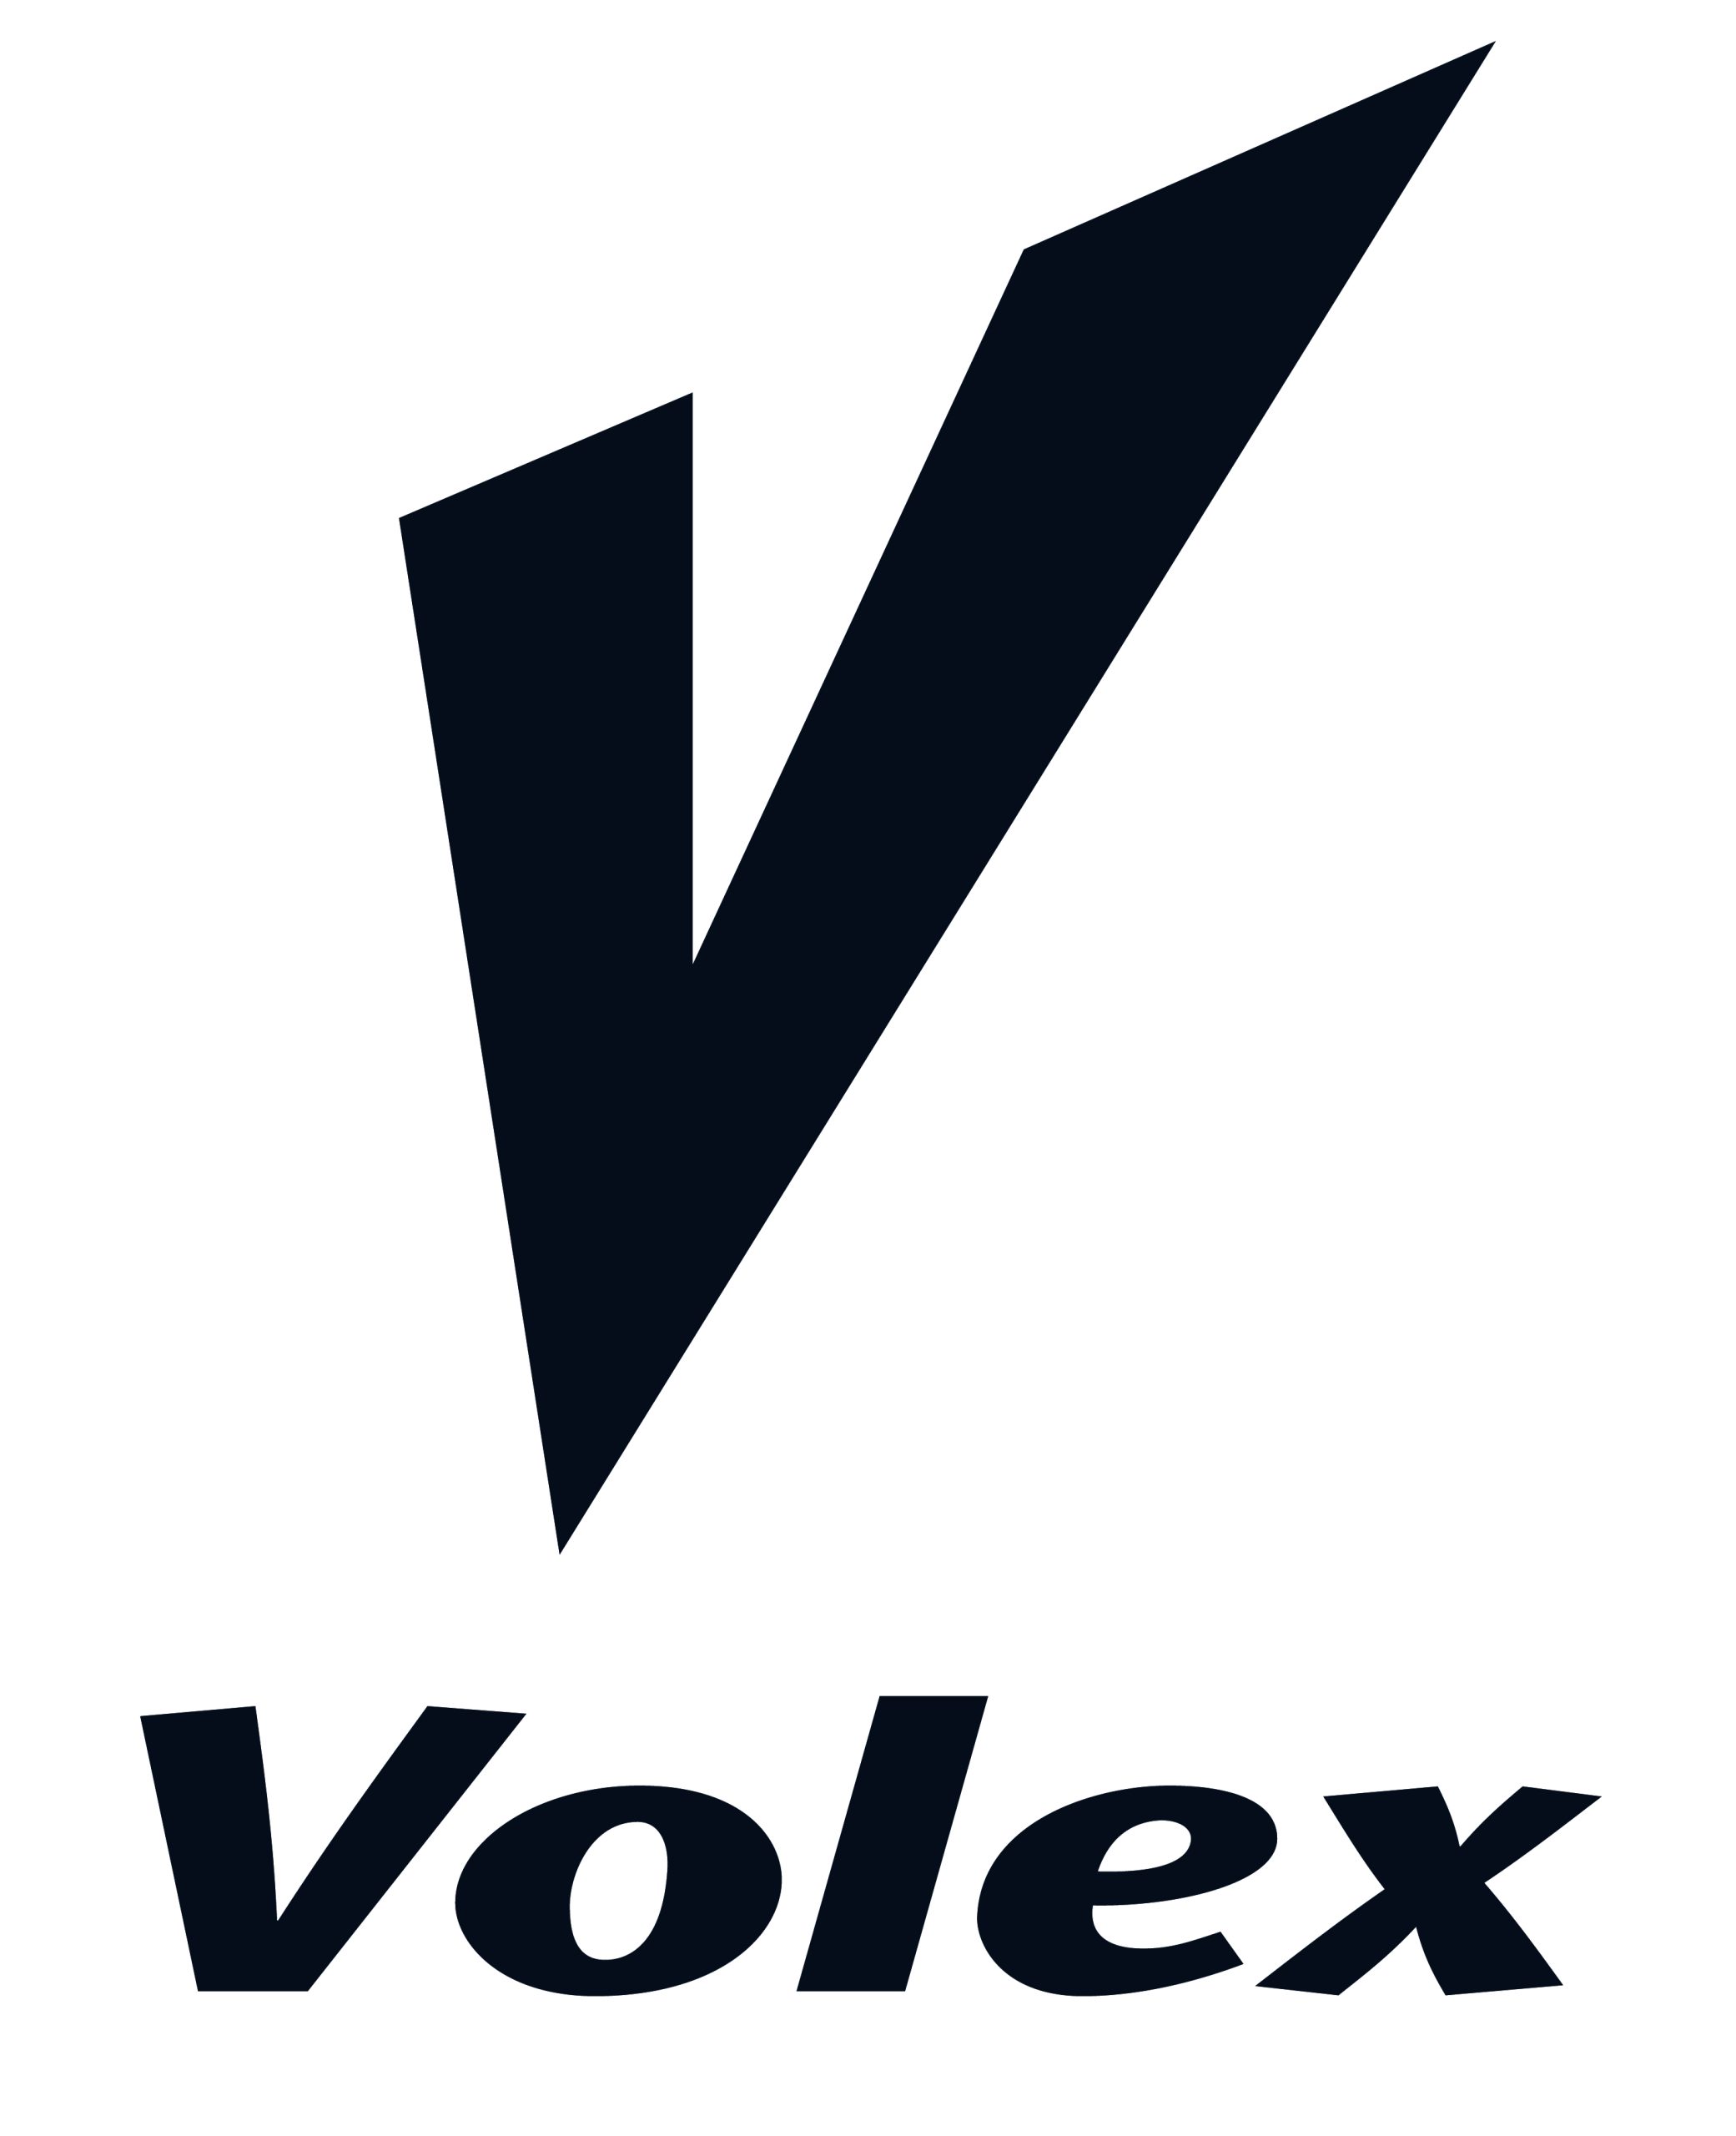 Volex plc